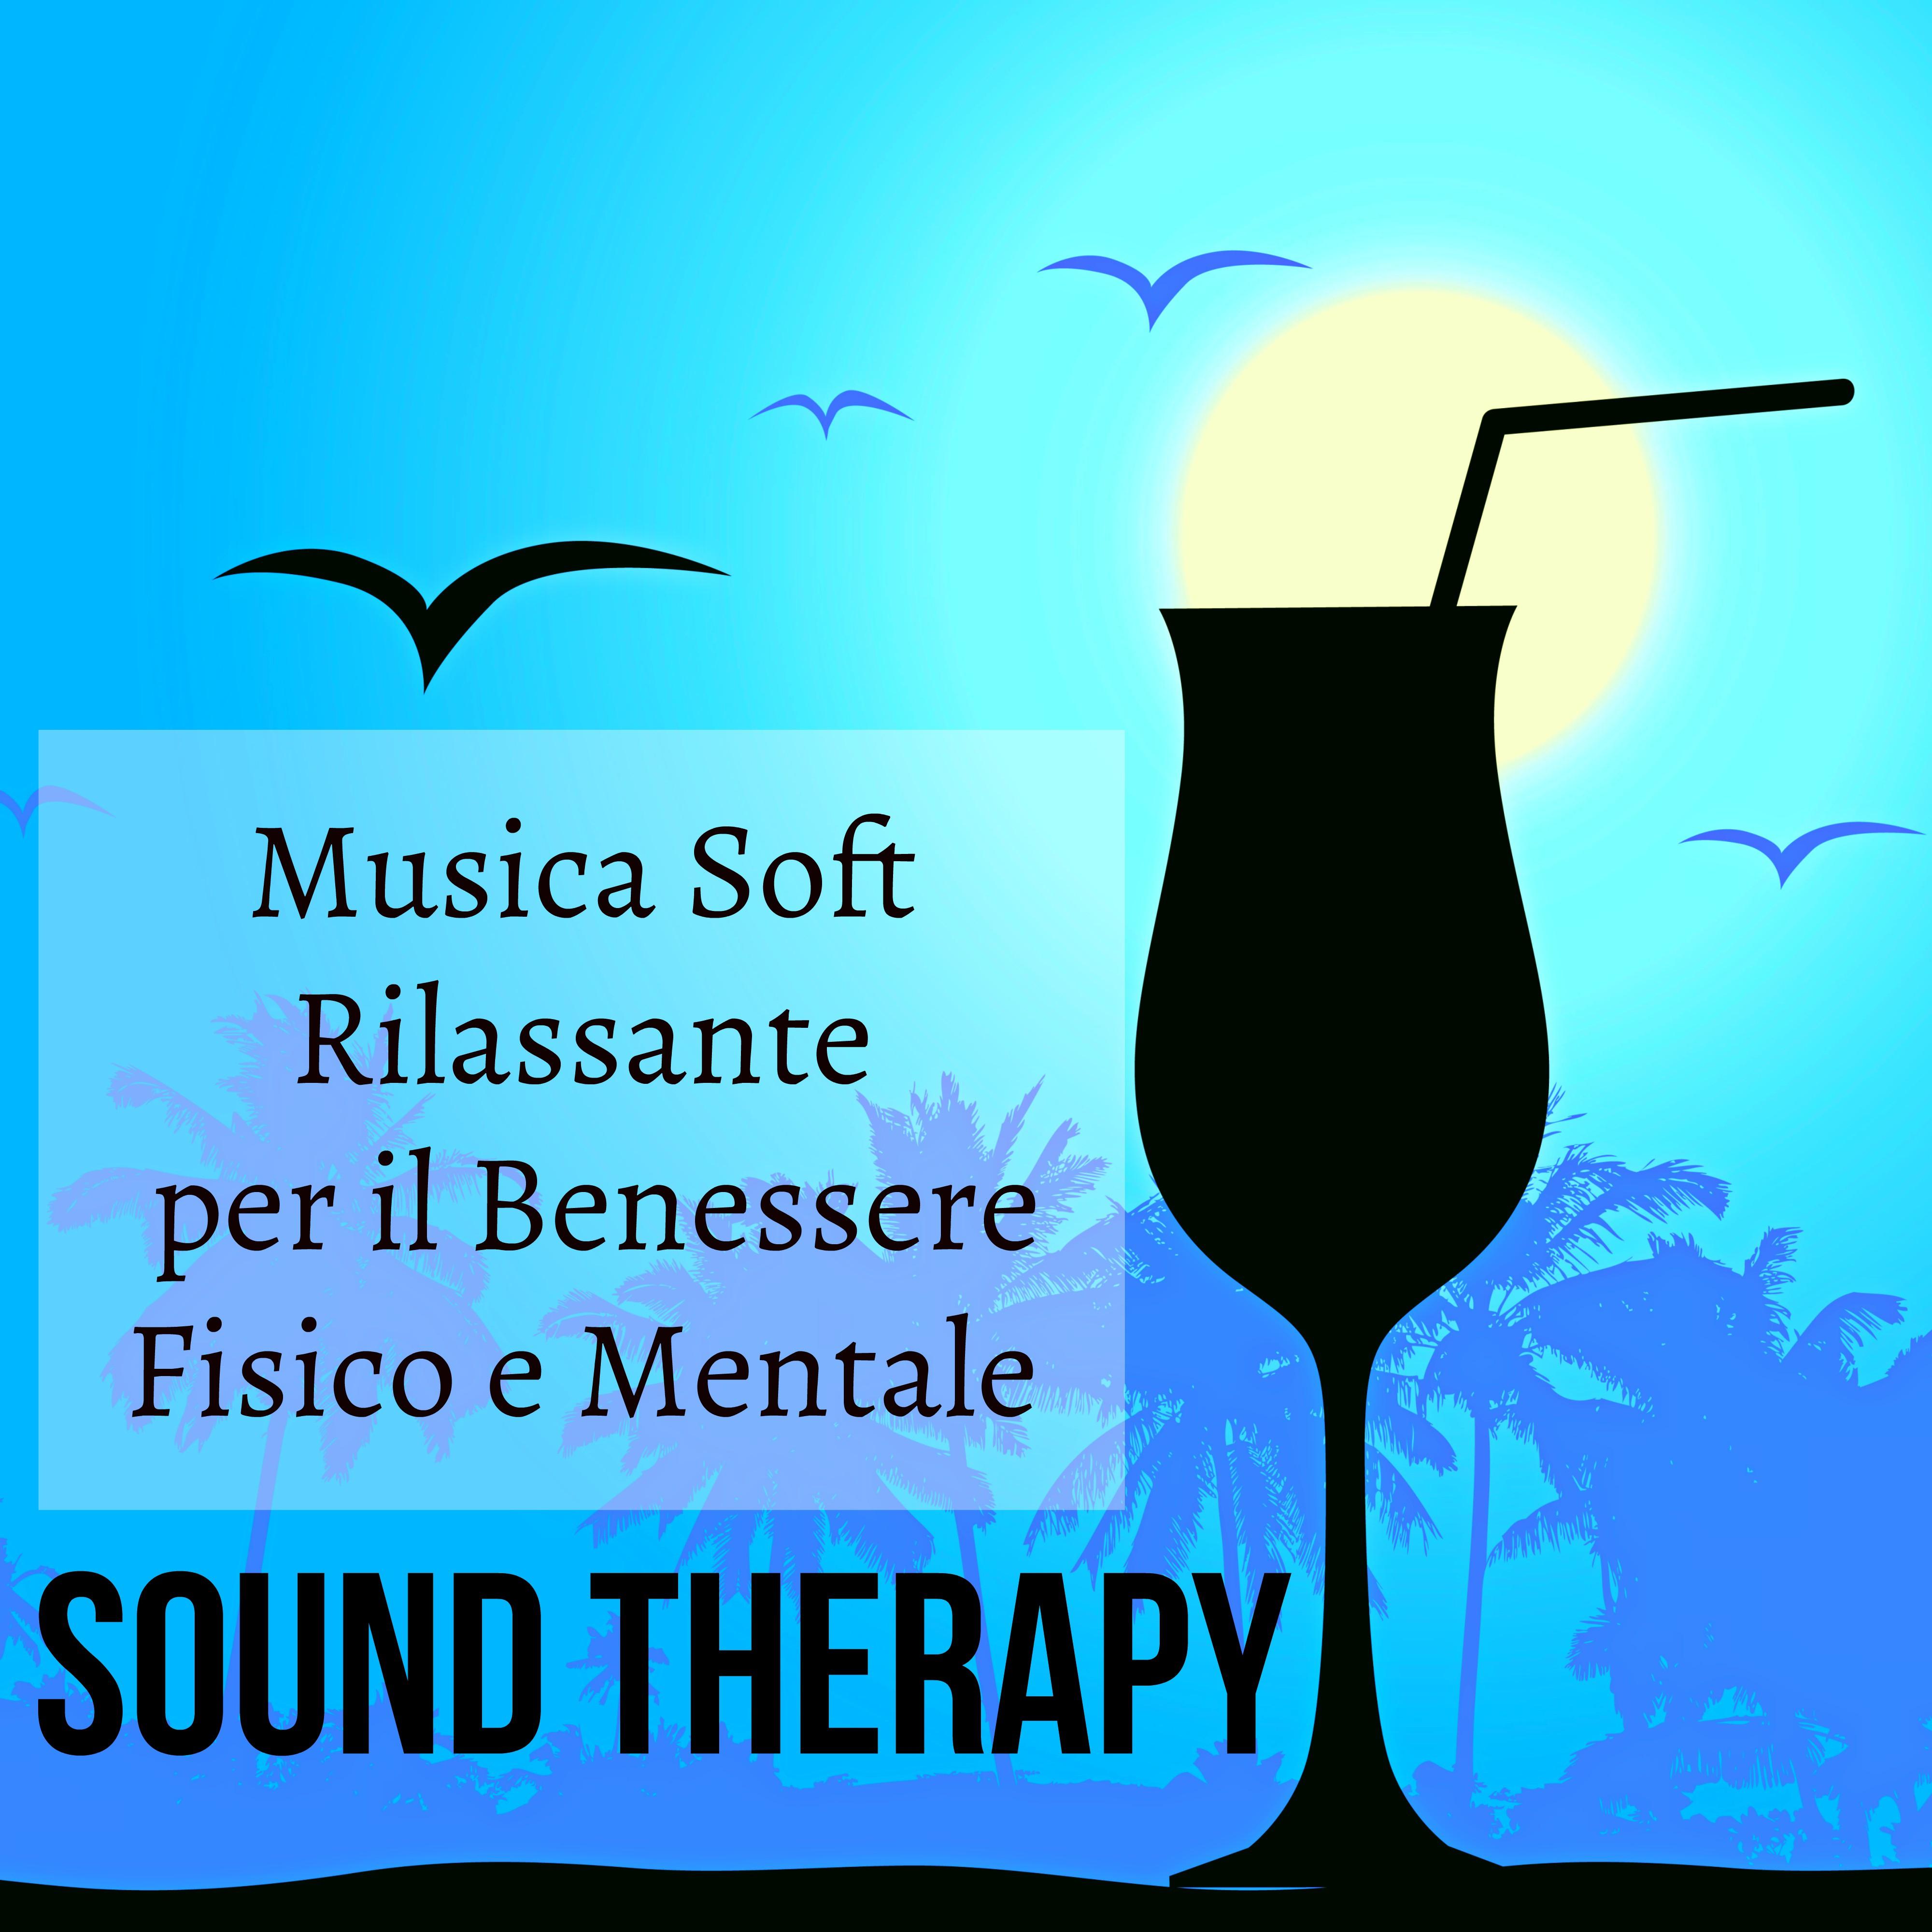 Sound Therapy - Musica Melodica Soft Rilassante per il Benessere Fisico e Mentale con Sottofondo Musicale dalla Natura Strumentale Lounge Chillout